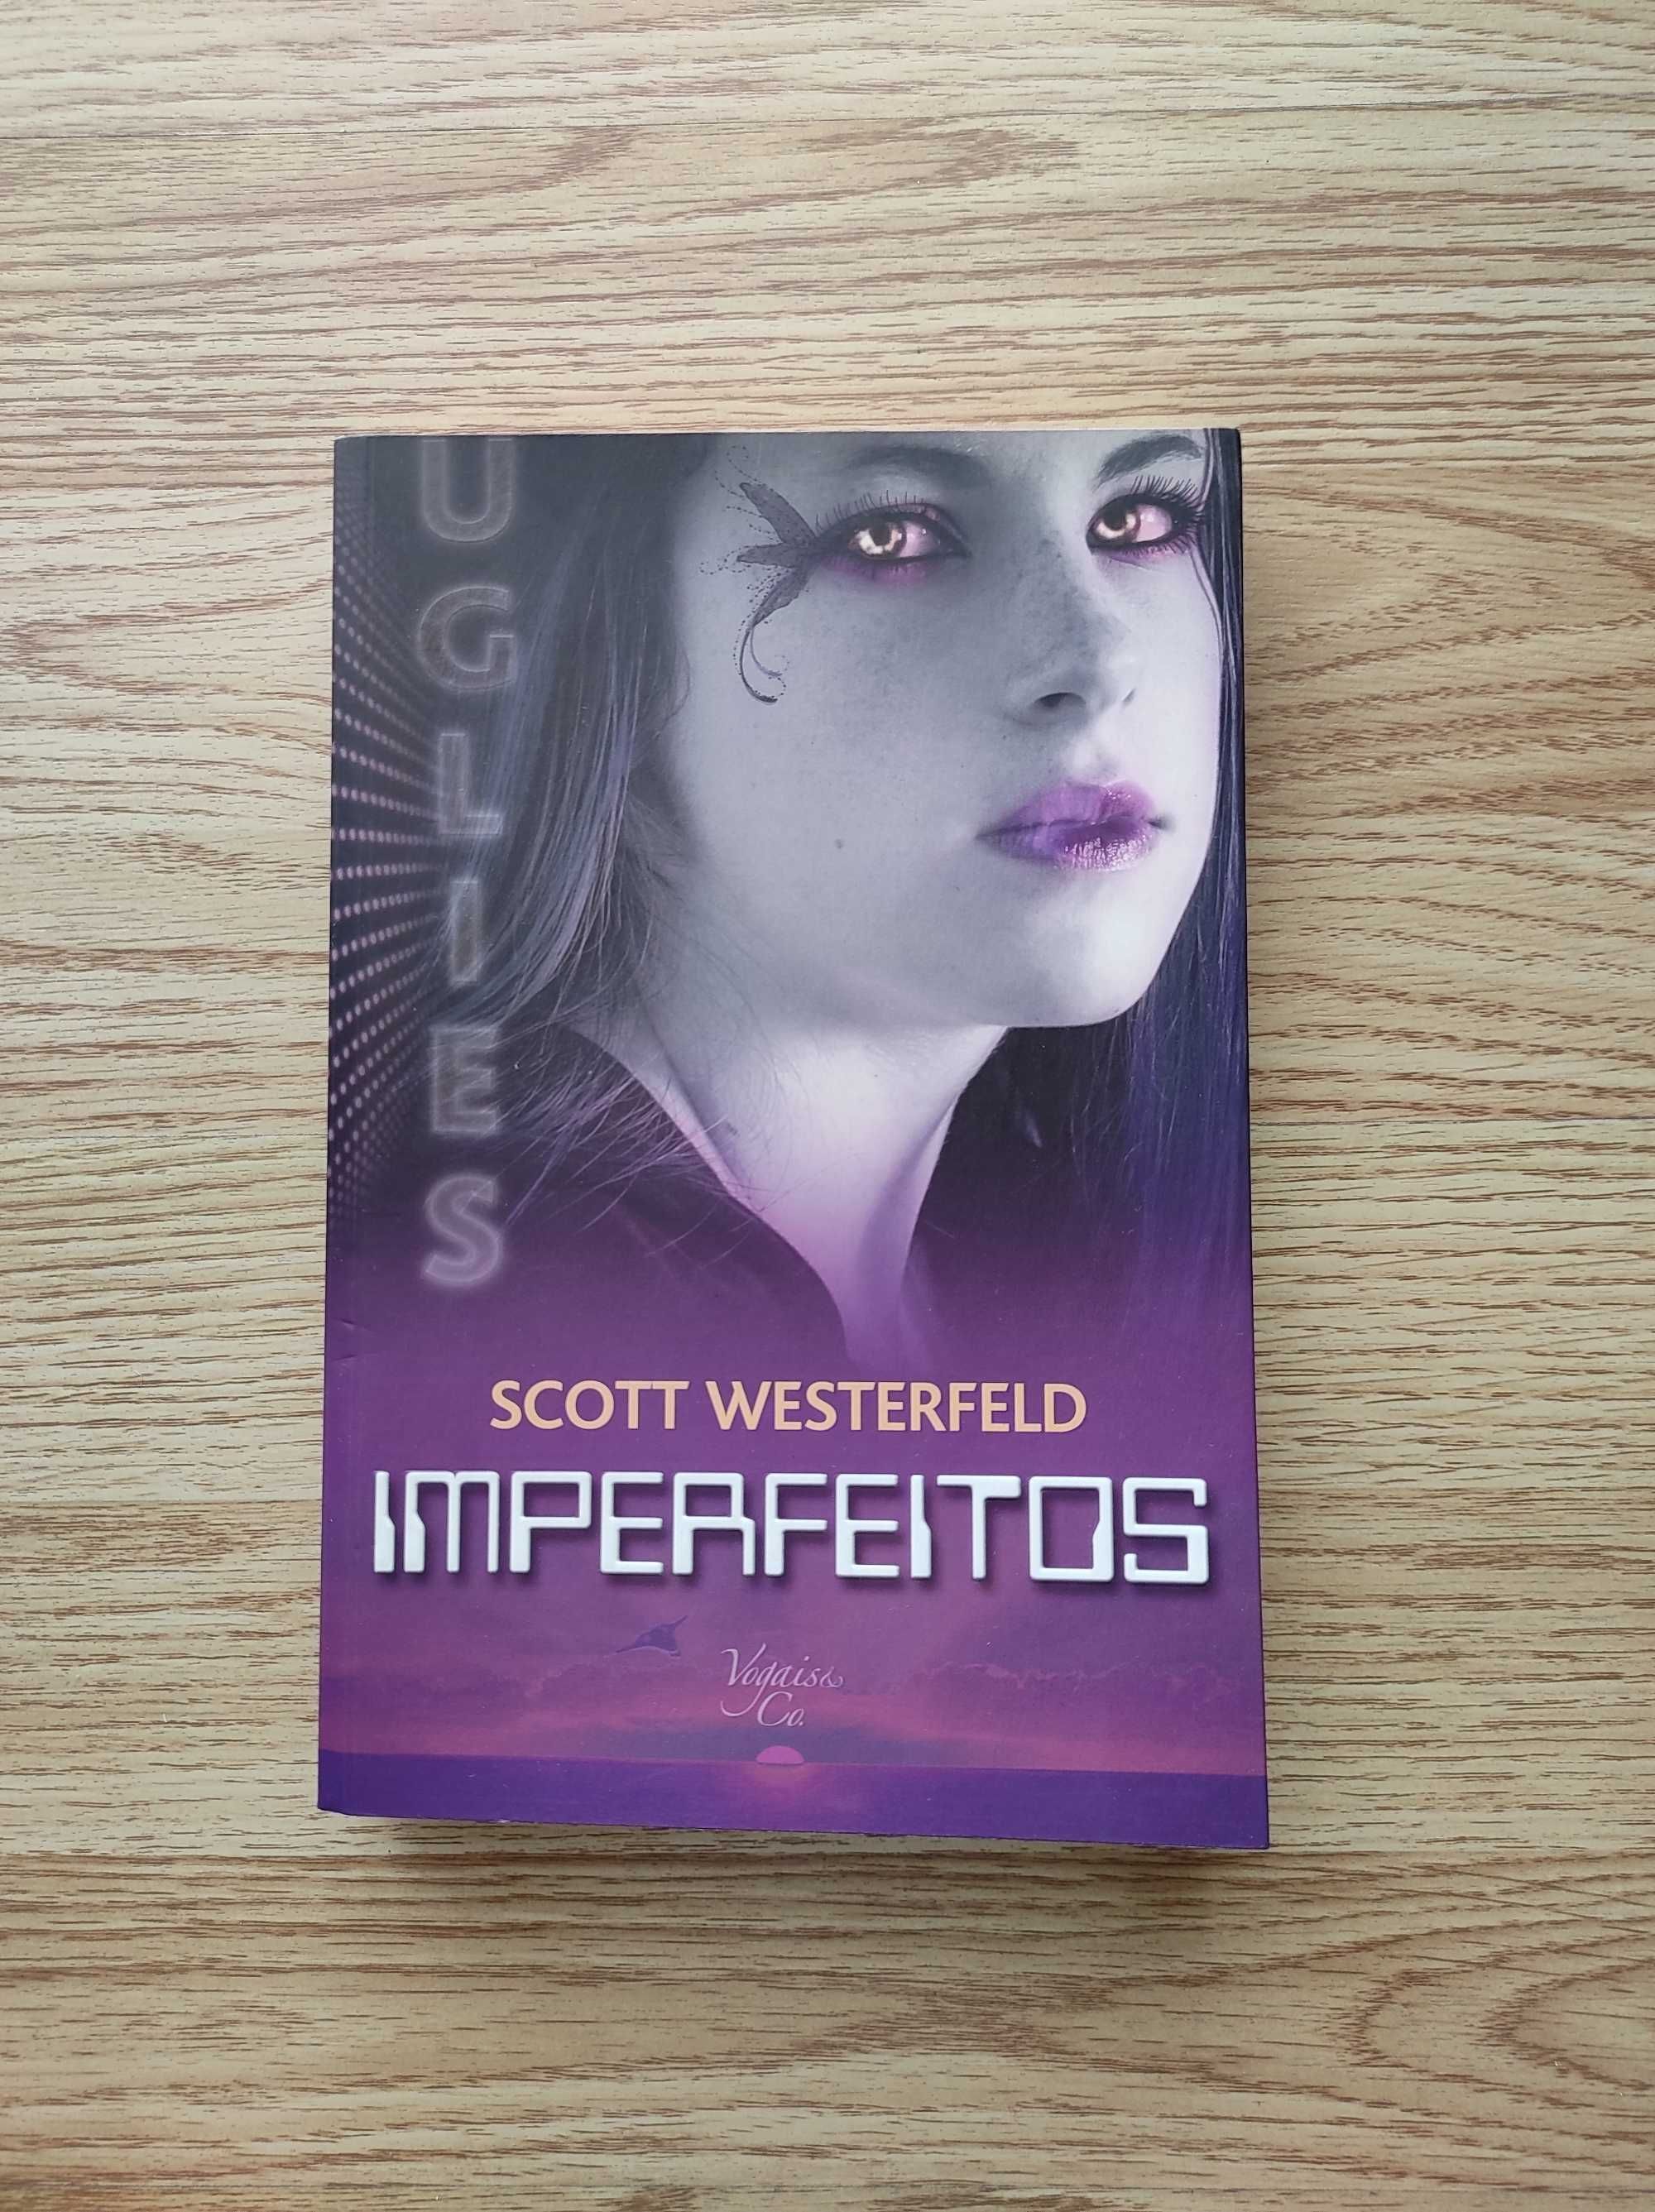 Livro Uglies 1 - Imperfeitos de Scott Westerfeld - Novo